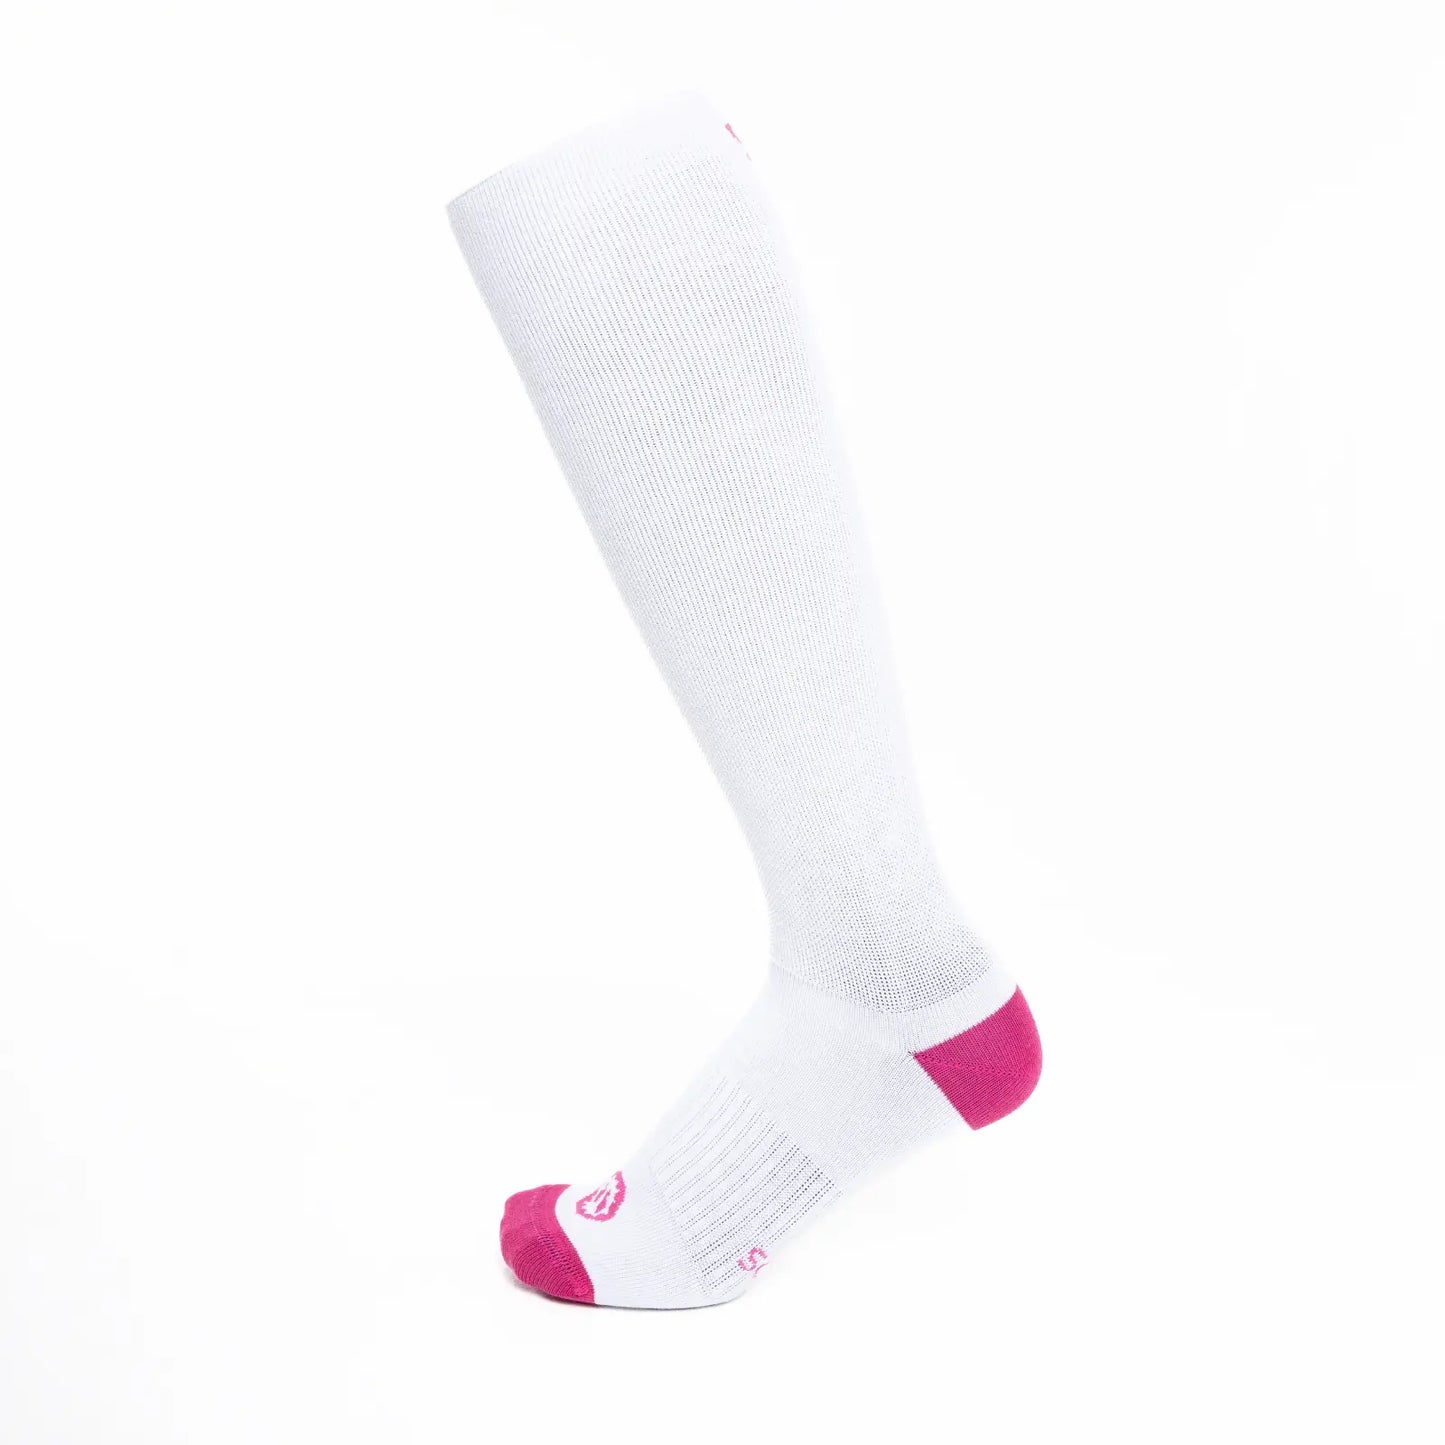 Calcetines con compresión de algodón, altos, color blanco con puntera y talón color rosa fucsia